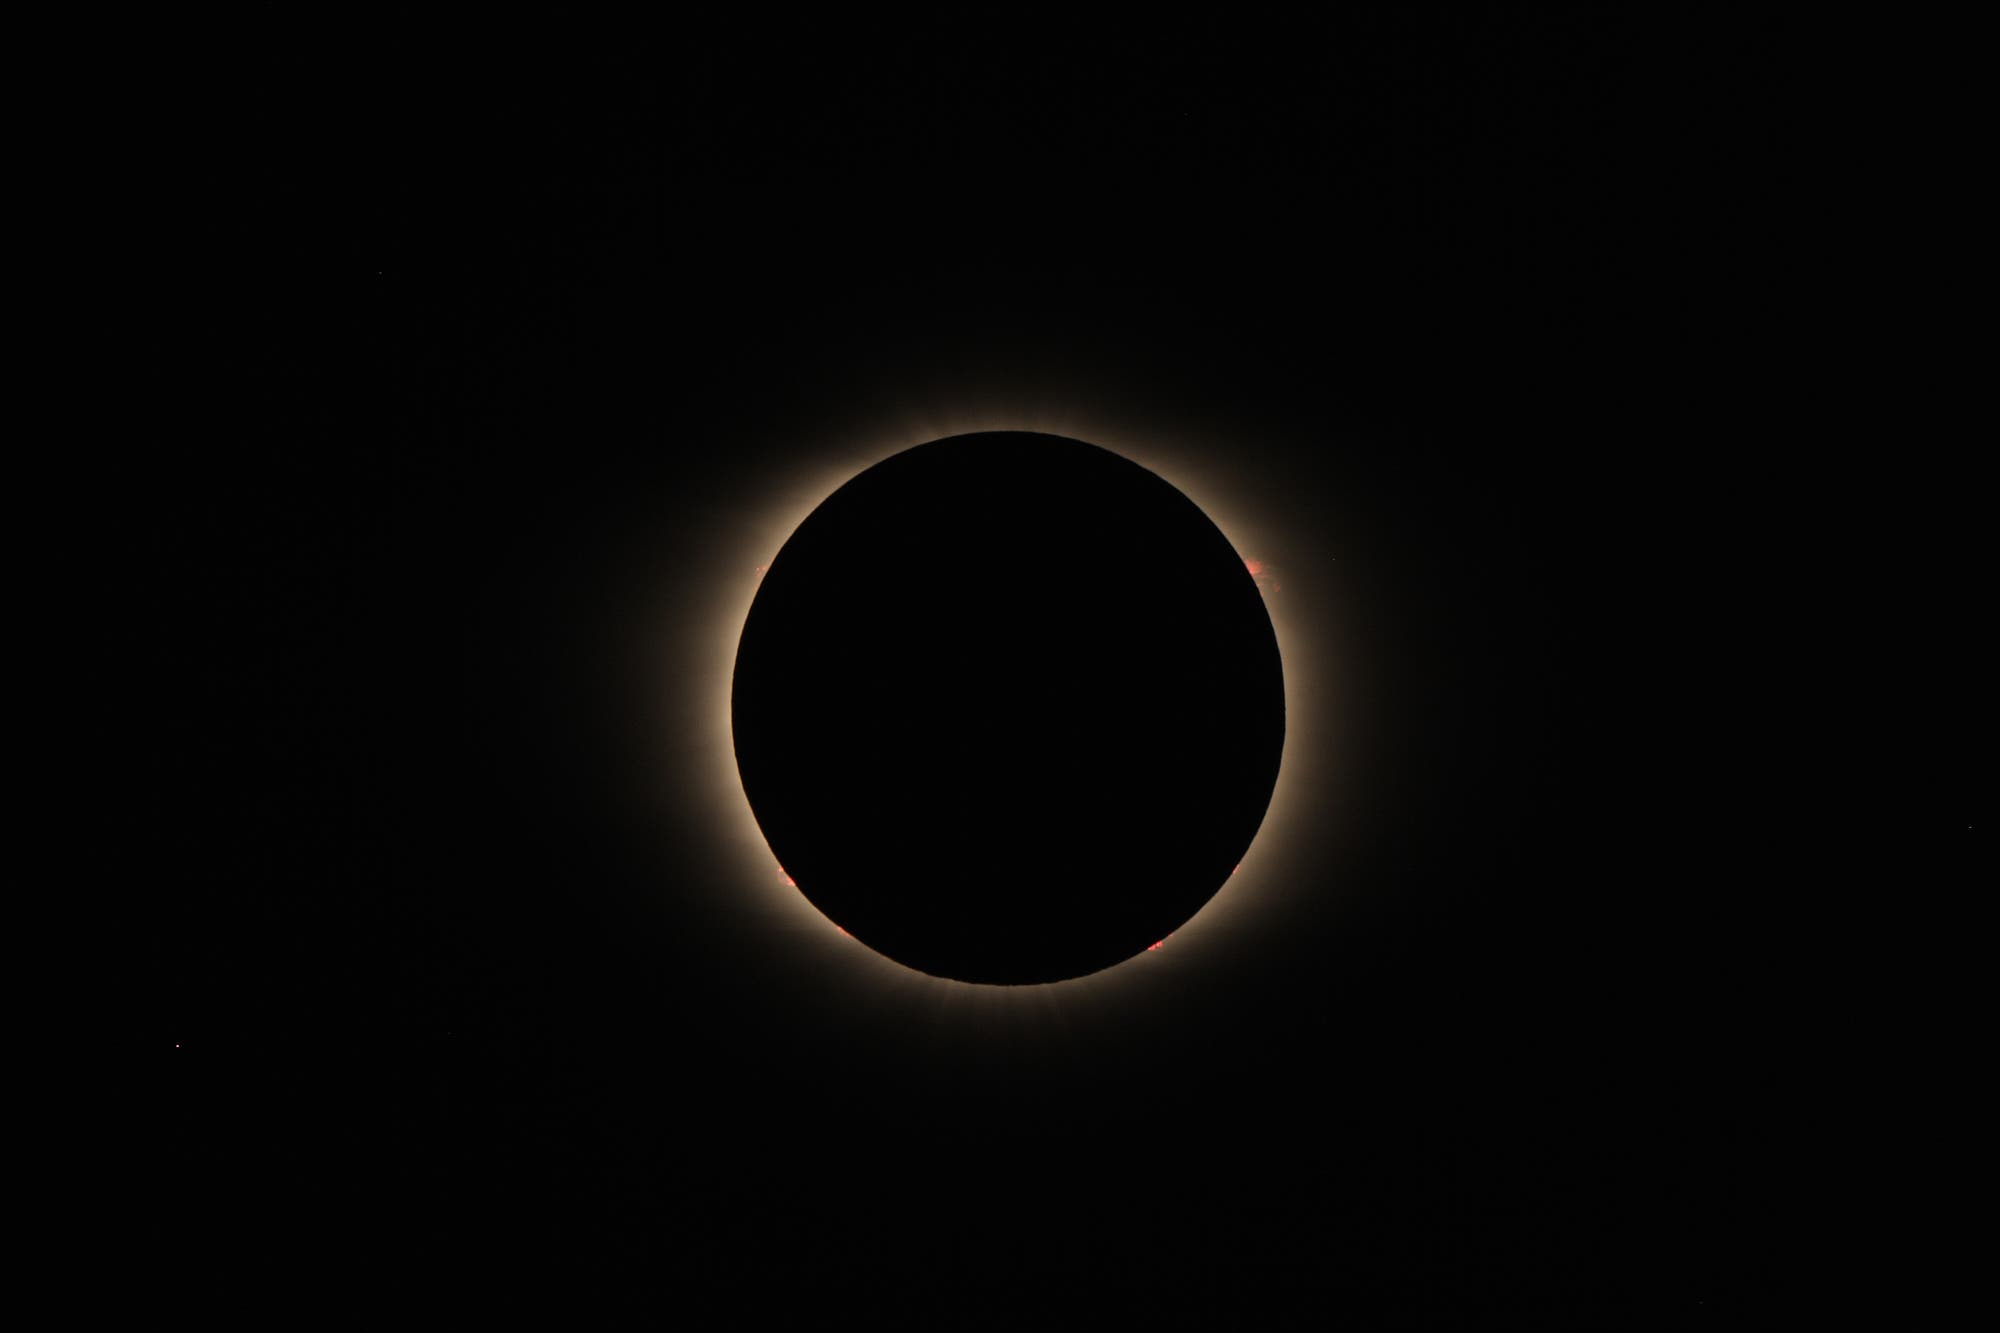 Totale Sonnenfinsternis vom 2. Juli 2019 – Protuberanzen und innere Korona